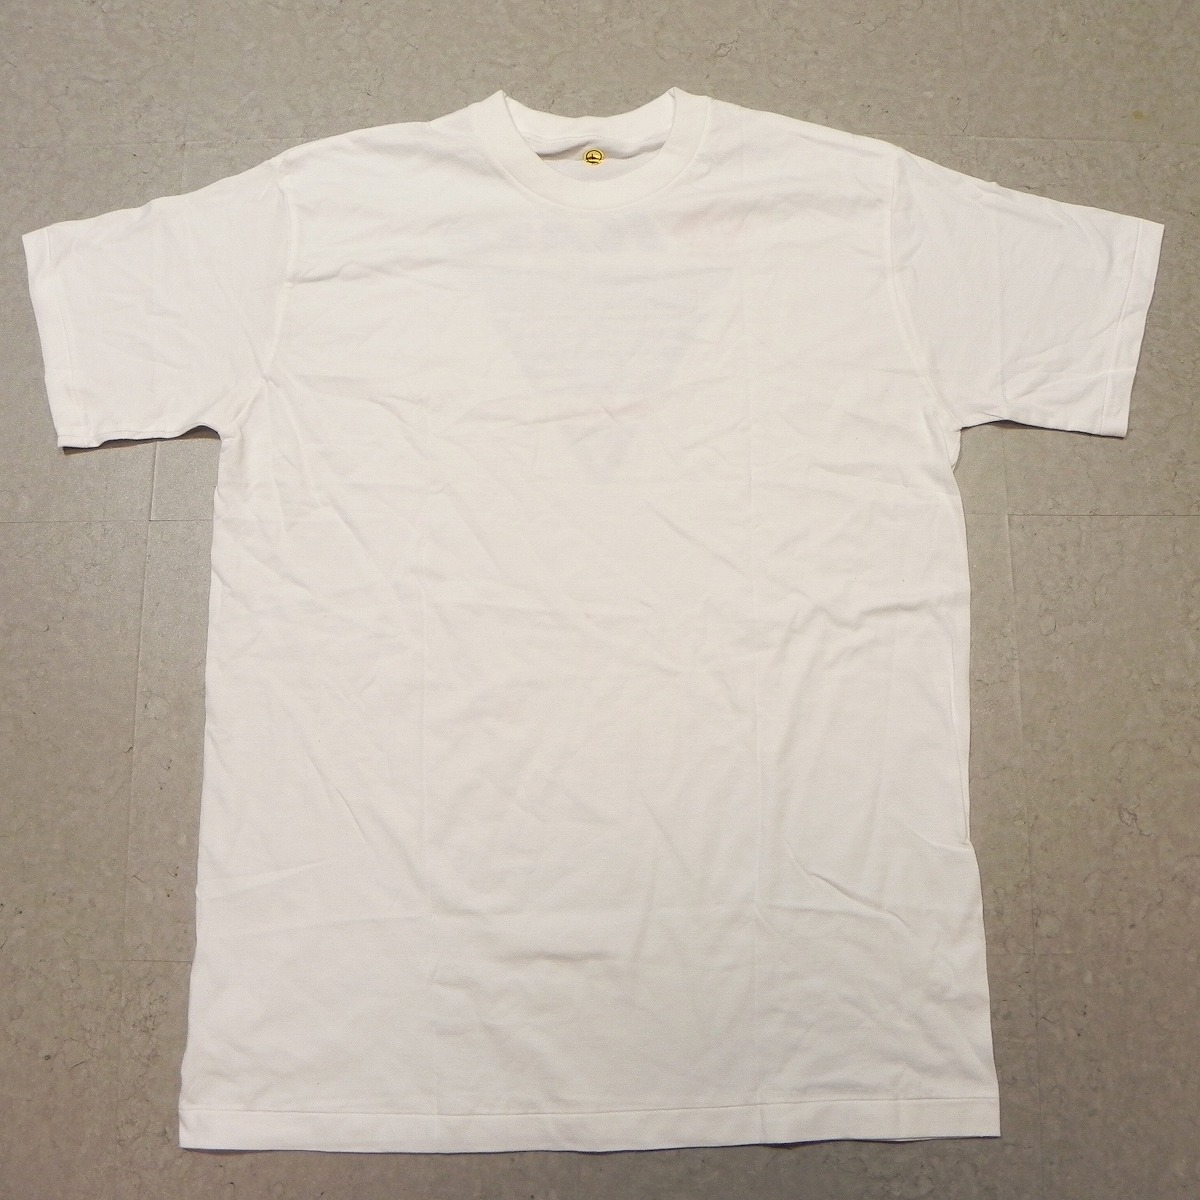 未使用品 カワサキ ライダーズクラブ KAZE 20th ANNIVERSARY Tシャツ kawasaki バイク バイカー 白 ホワイト Lサイズ ★d_画像3